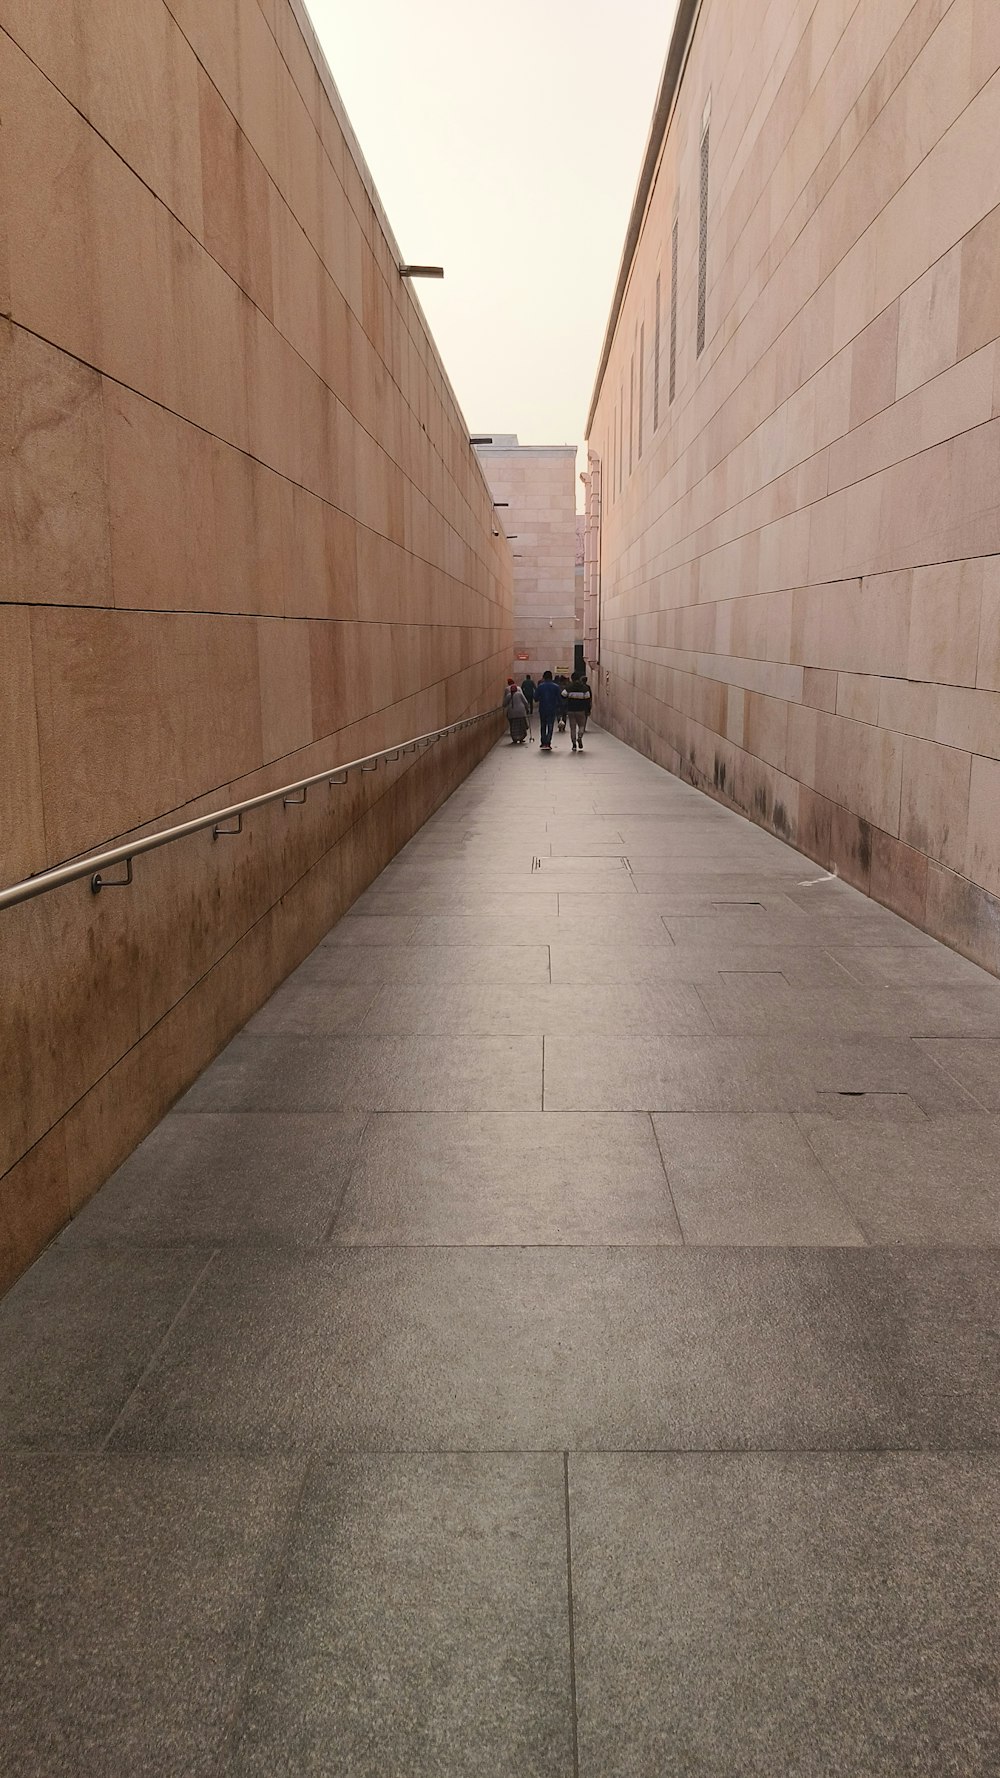 ein paar Leute, die einen Bürgersteig neben einer Mauer entlang gehen